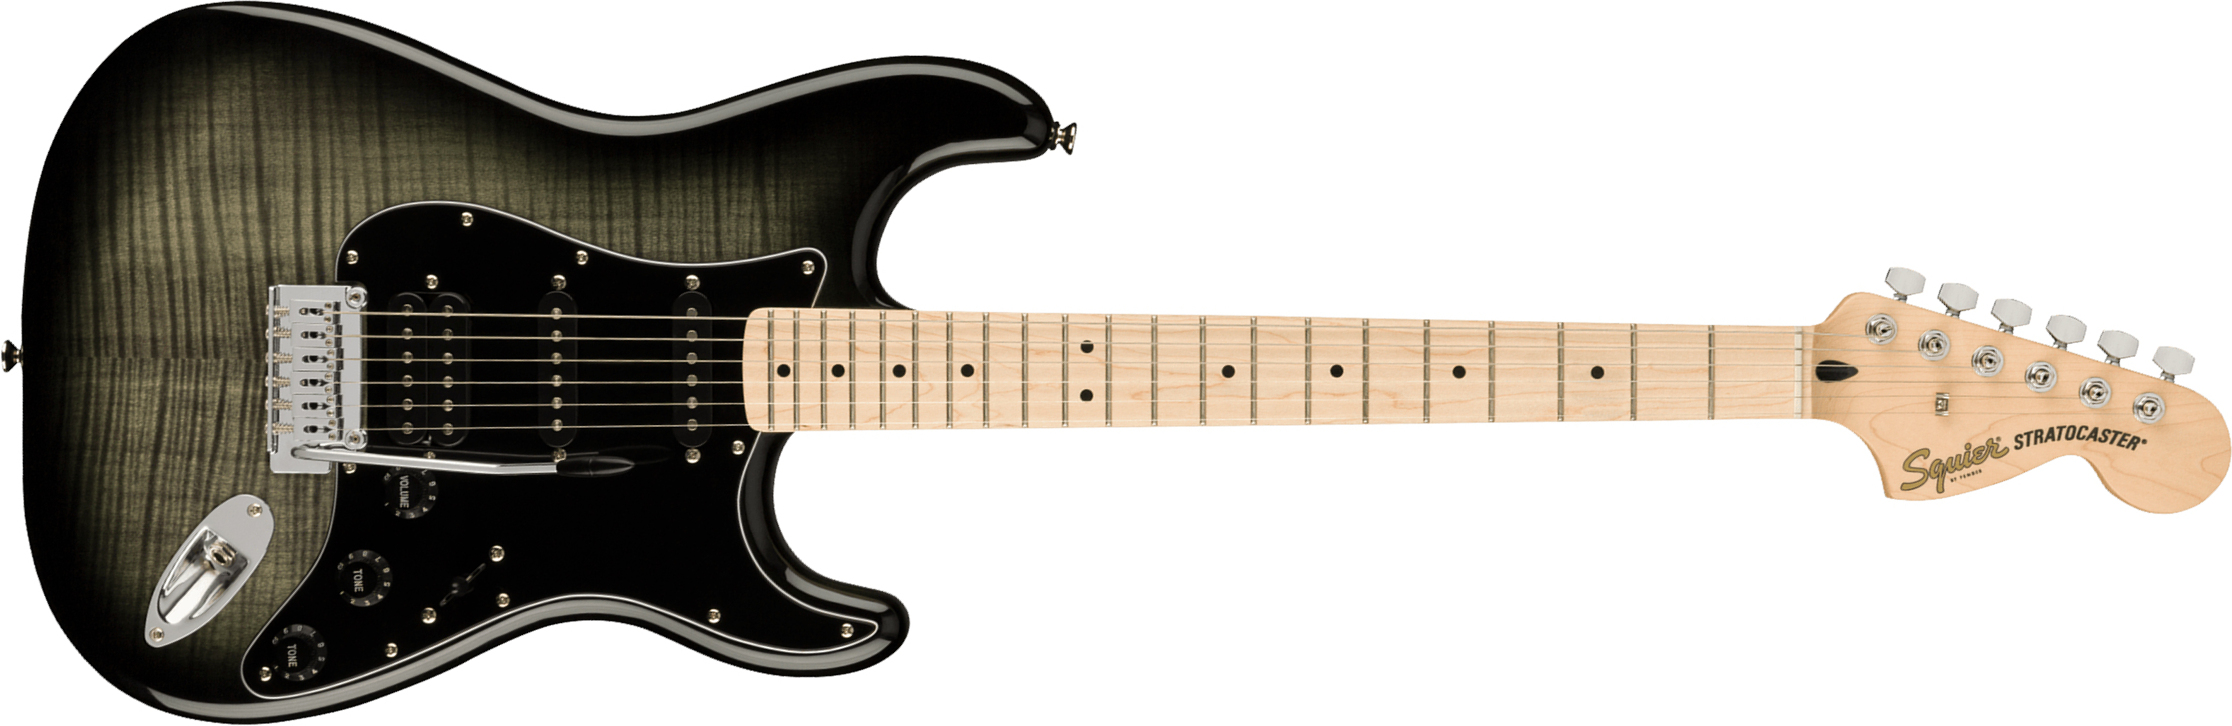 Squier Strat Affinity Fmt Hss 2021 Trem Mn - Black Burst - Guitarra eléctrica con forma de str. - Main picture